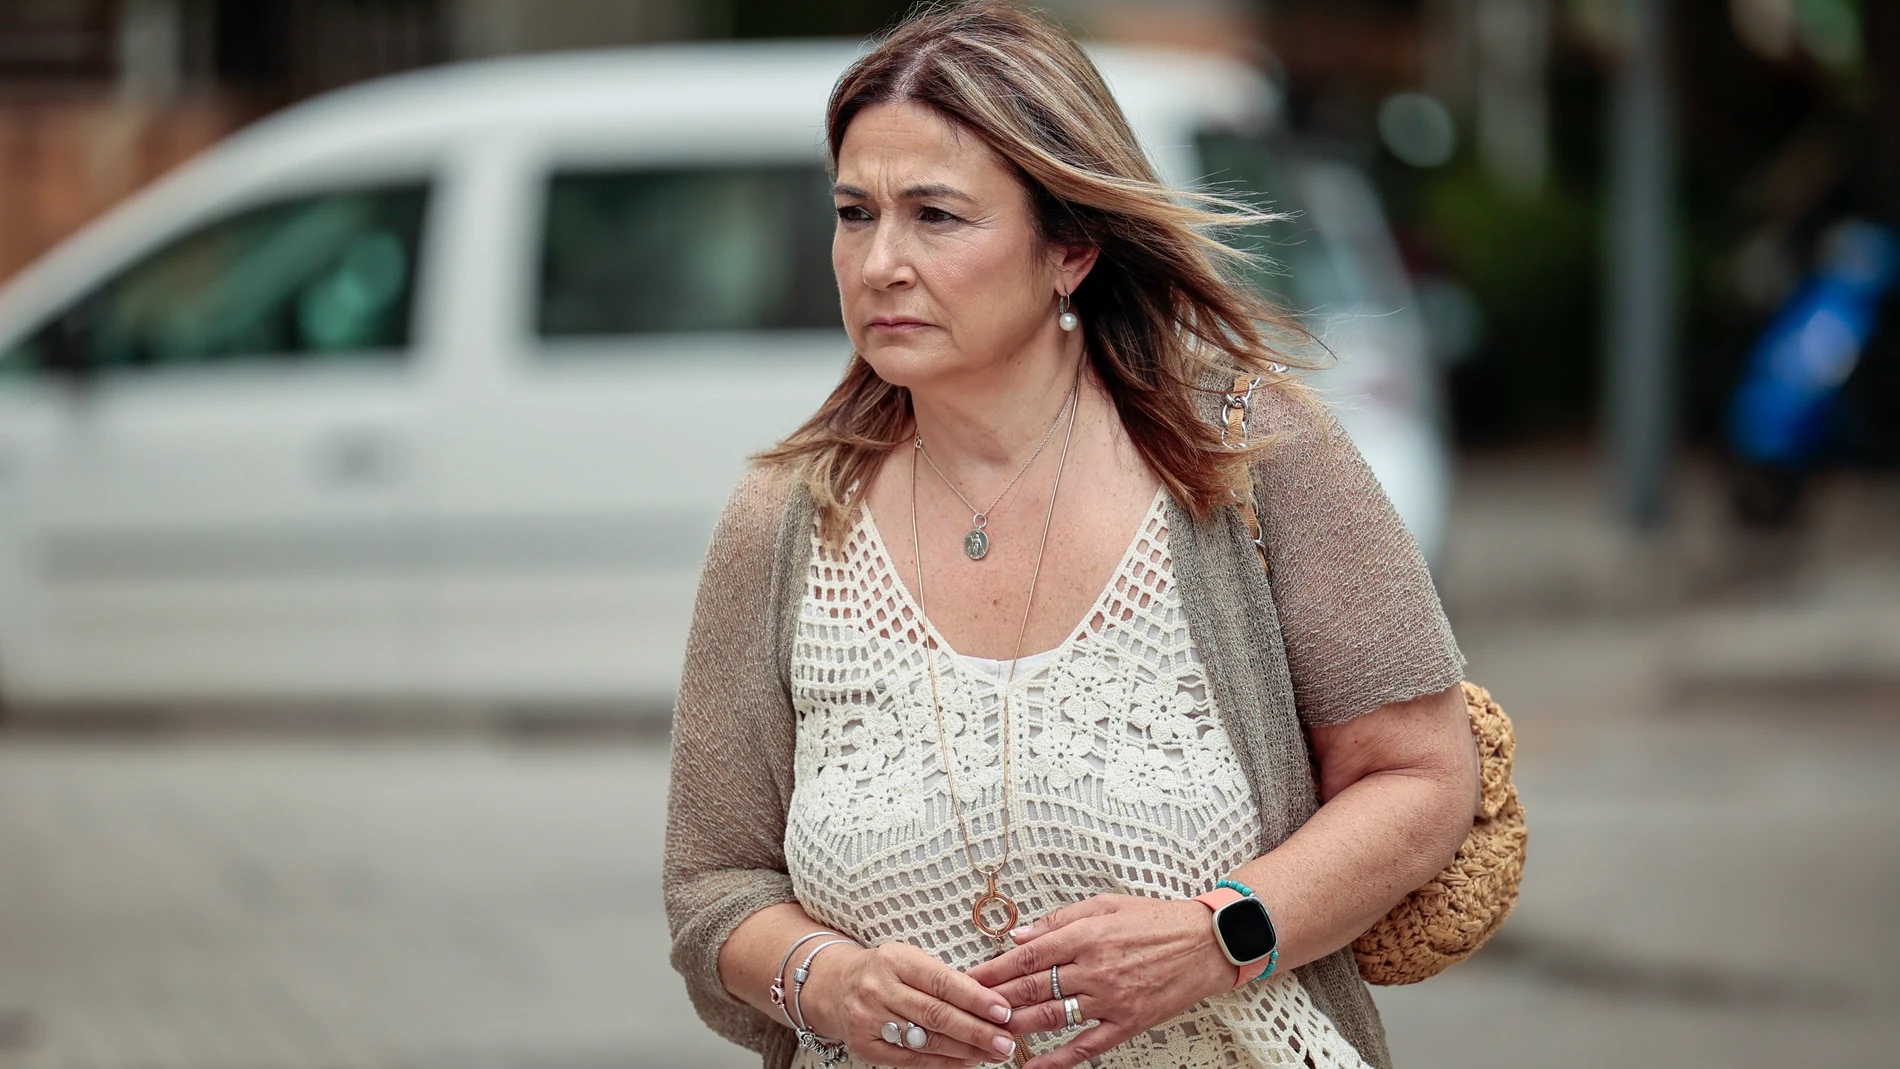 La madre de Marta Calvo ha lamentado que el asesino confeso de su hija no se hubiera suicidado antes de matar a todas sus víctimas